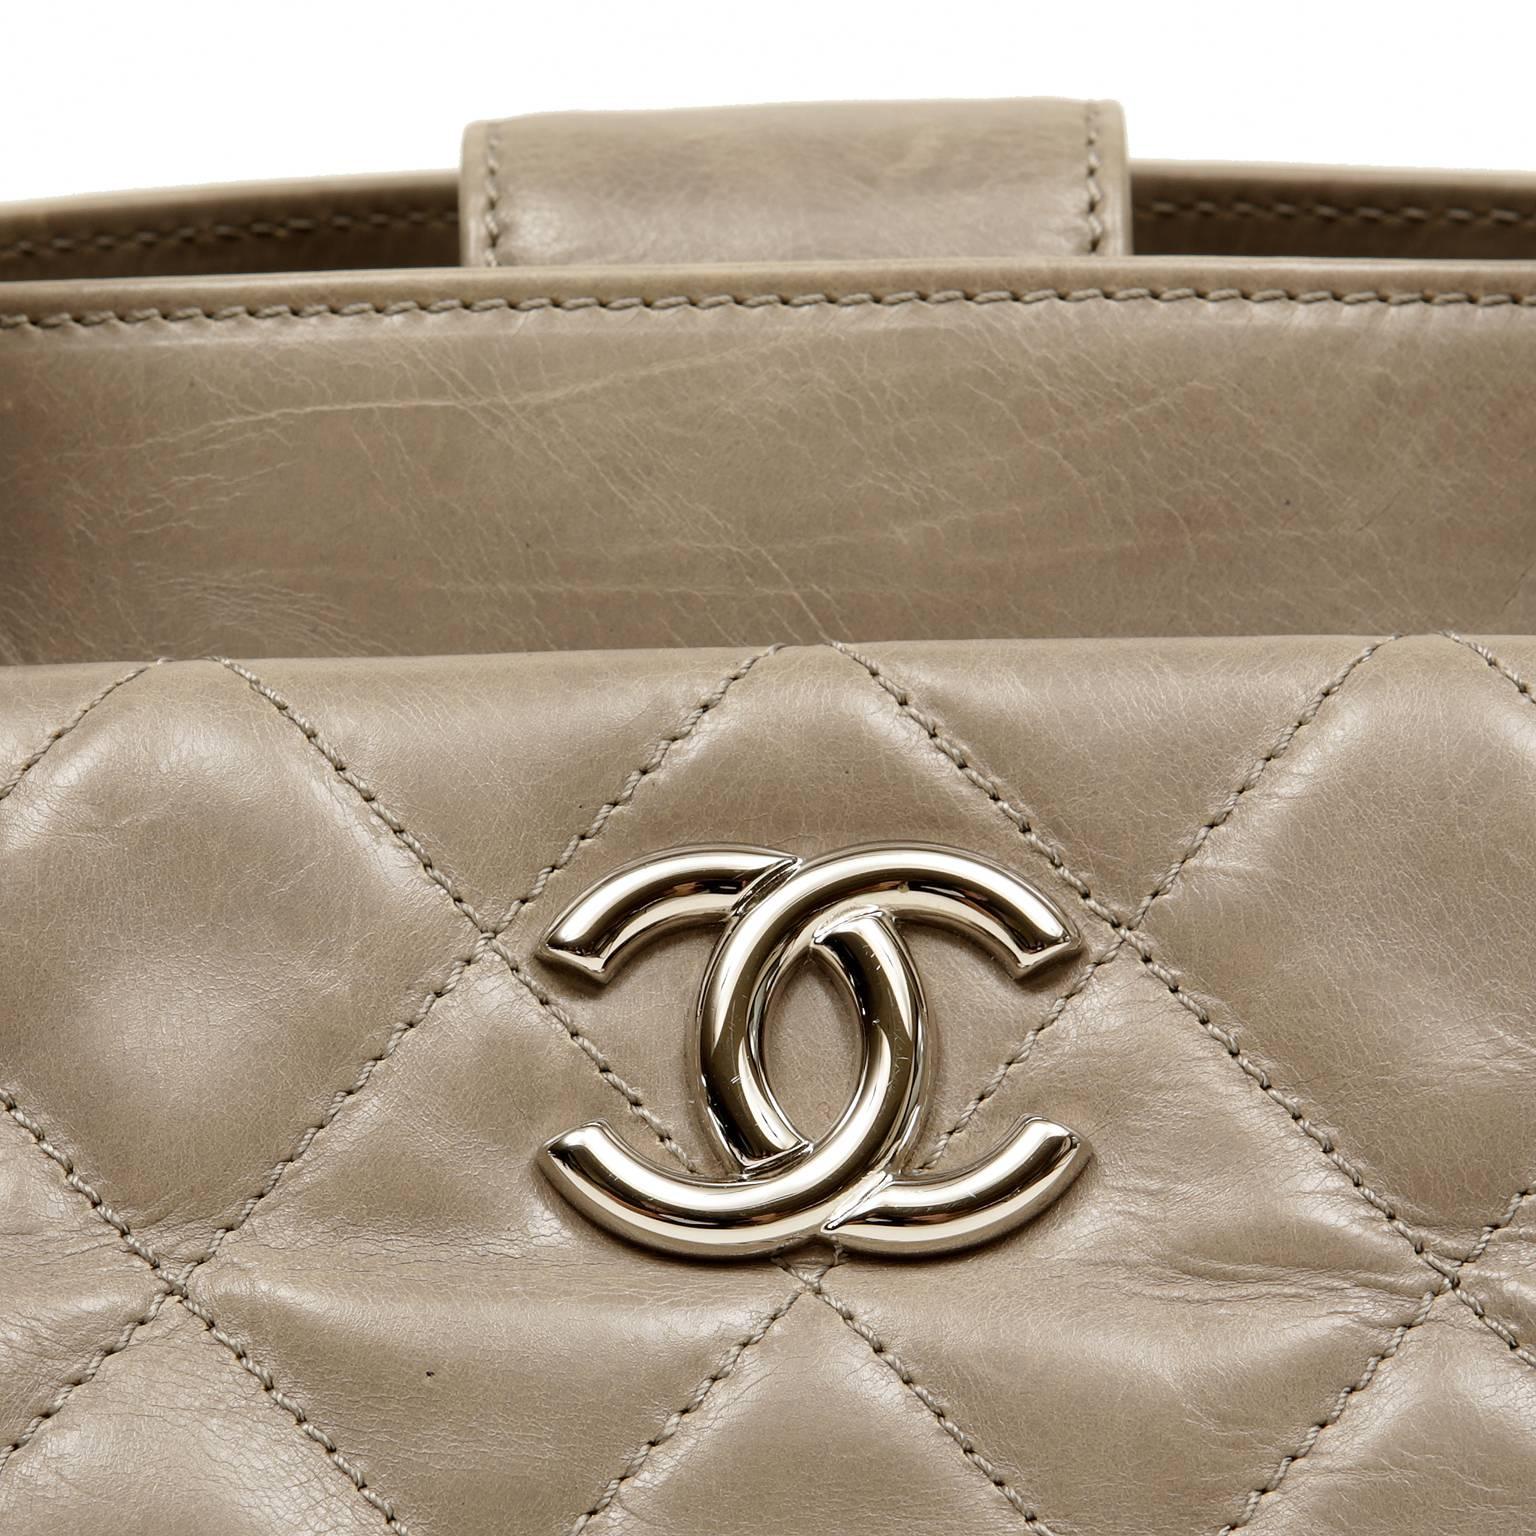 Women's Chanel Grey Distressed Leather Portobello Tote Bag